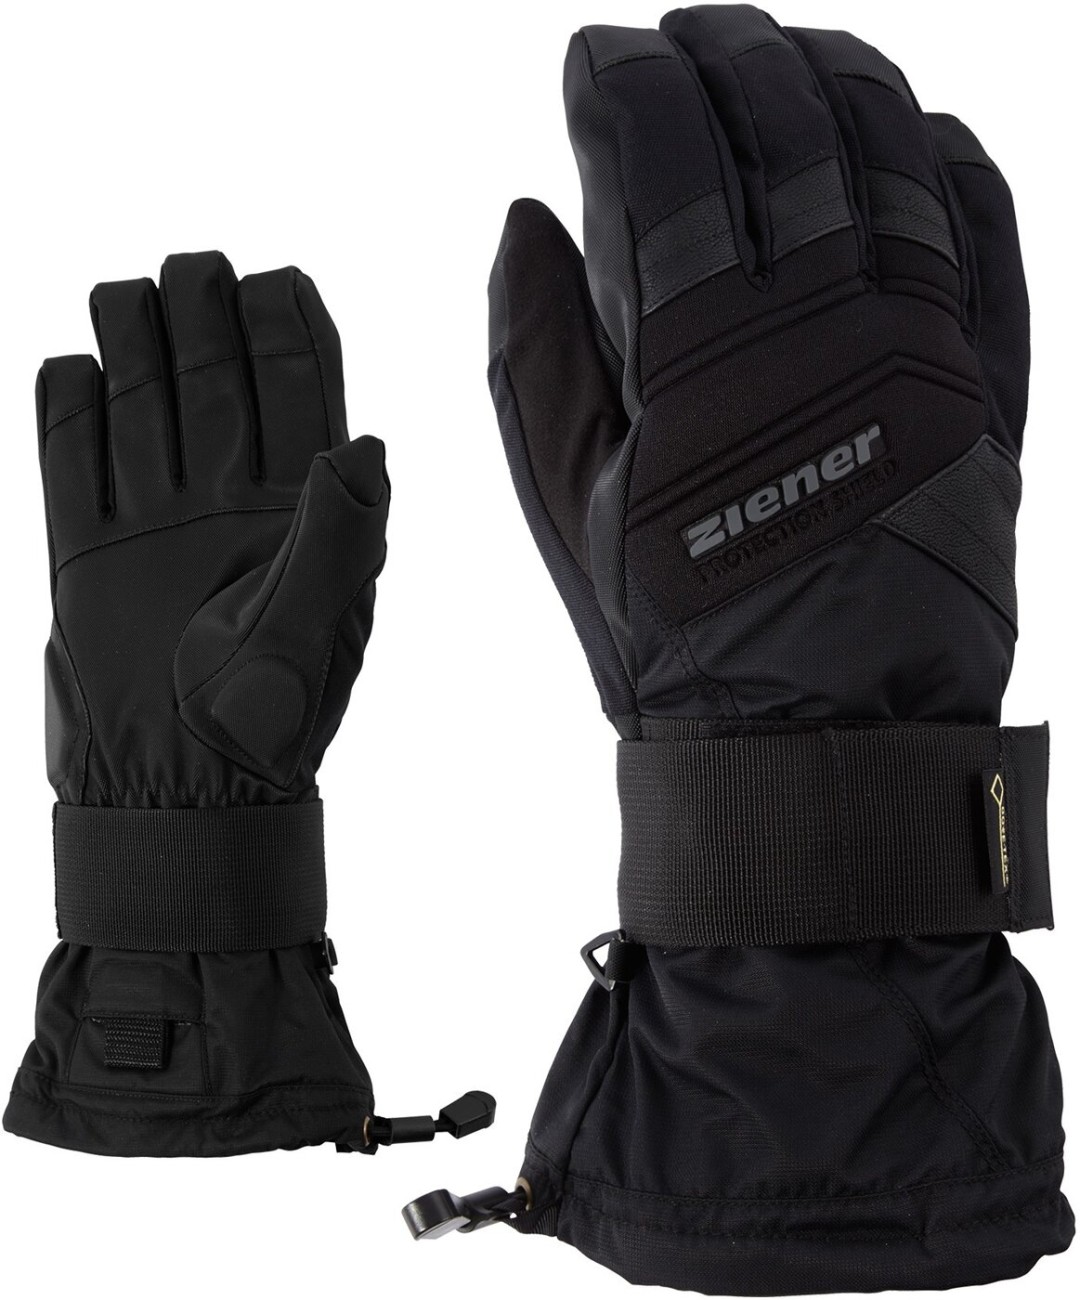 ZIENER MEDICAL GTX glove SB 12 black online kaufen